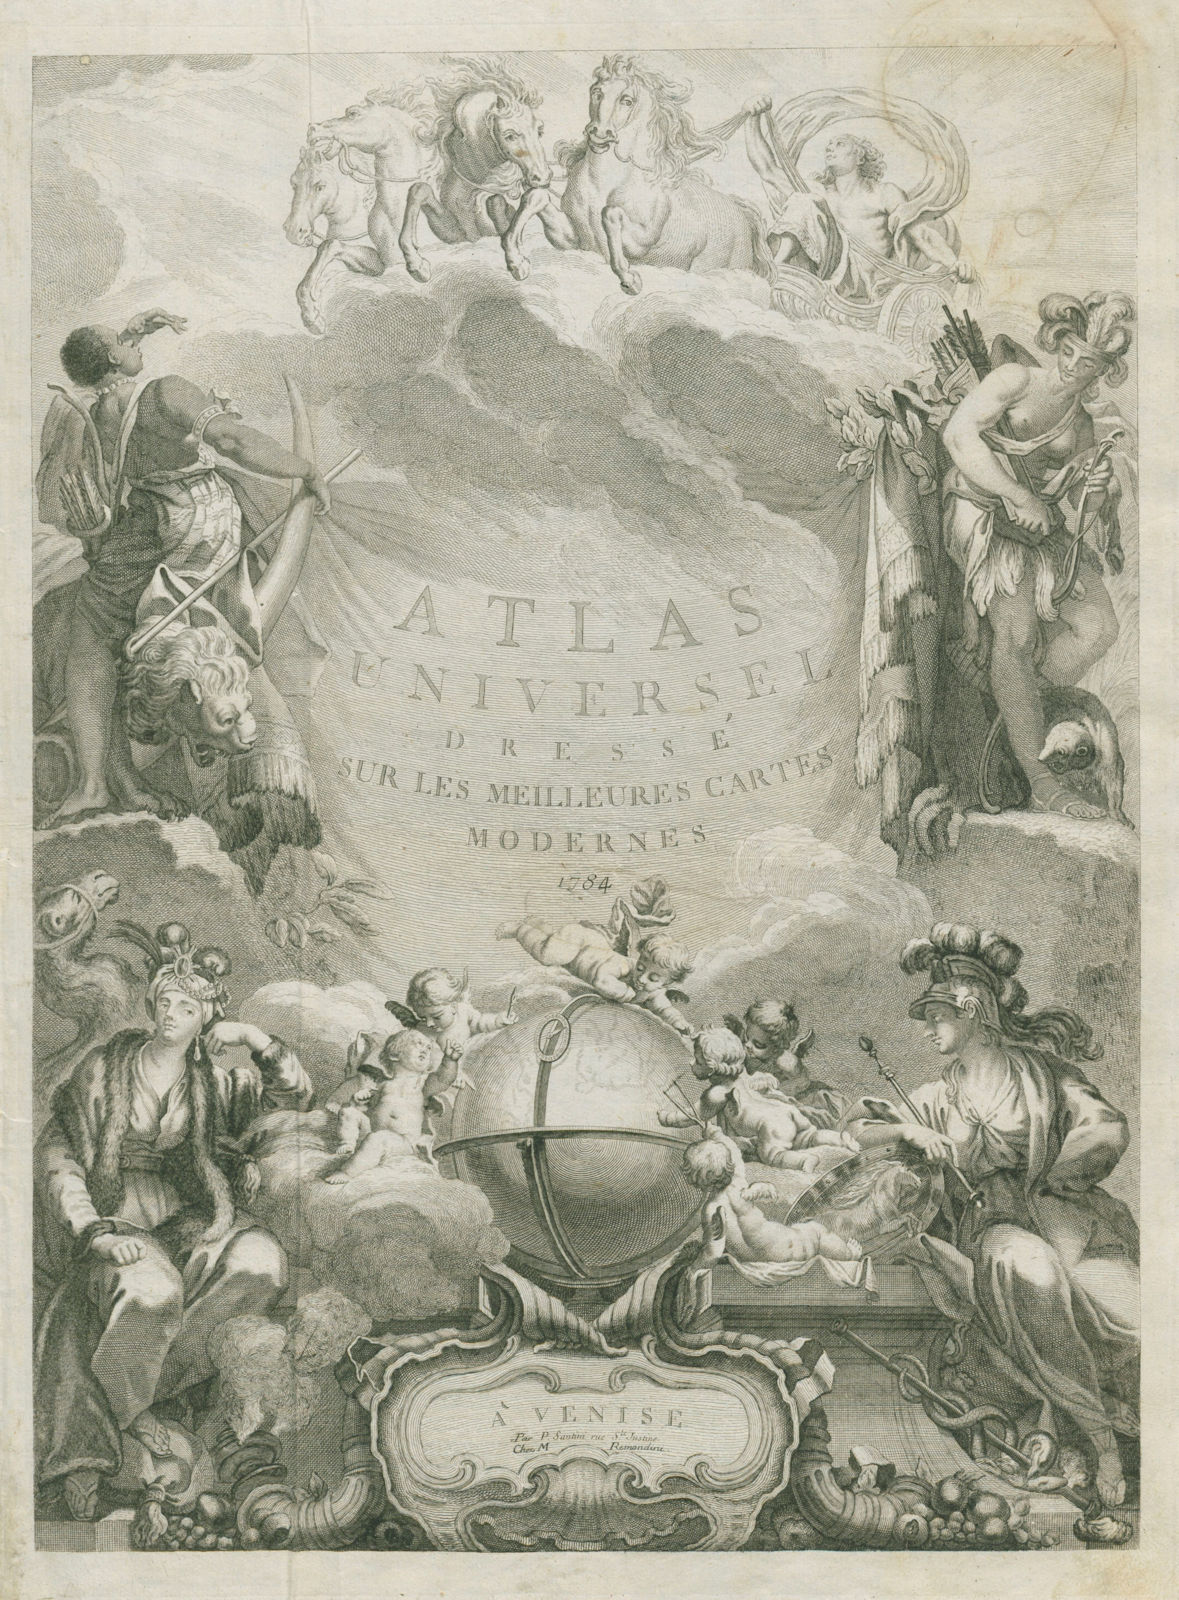 Associate Product "Atlas Universel. À Venise par P. Santini". Decorative title page 1784 old map